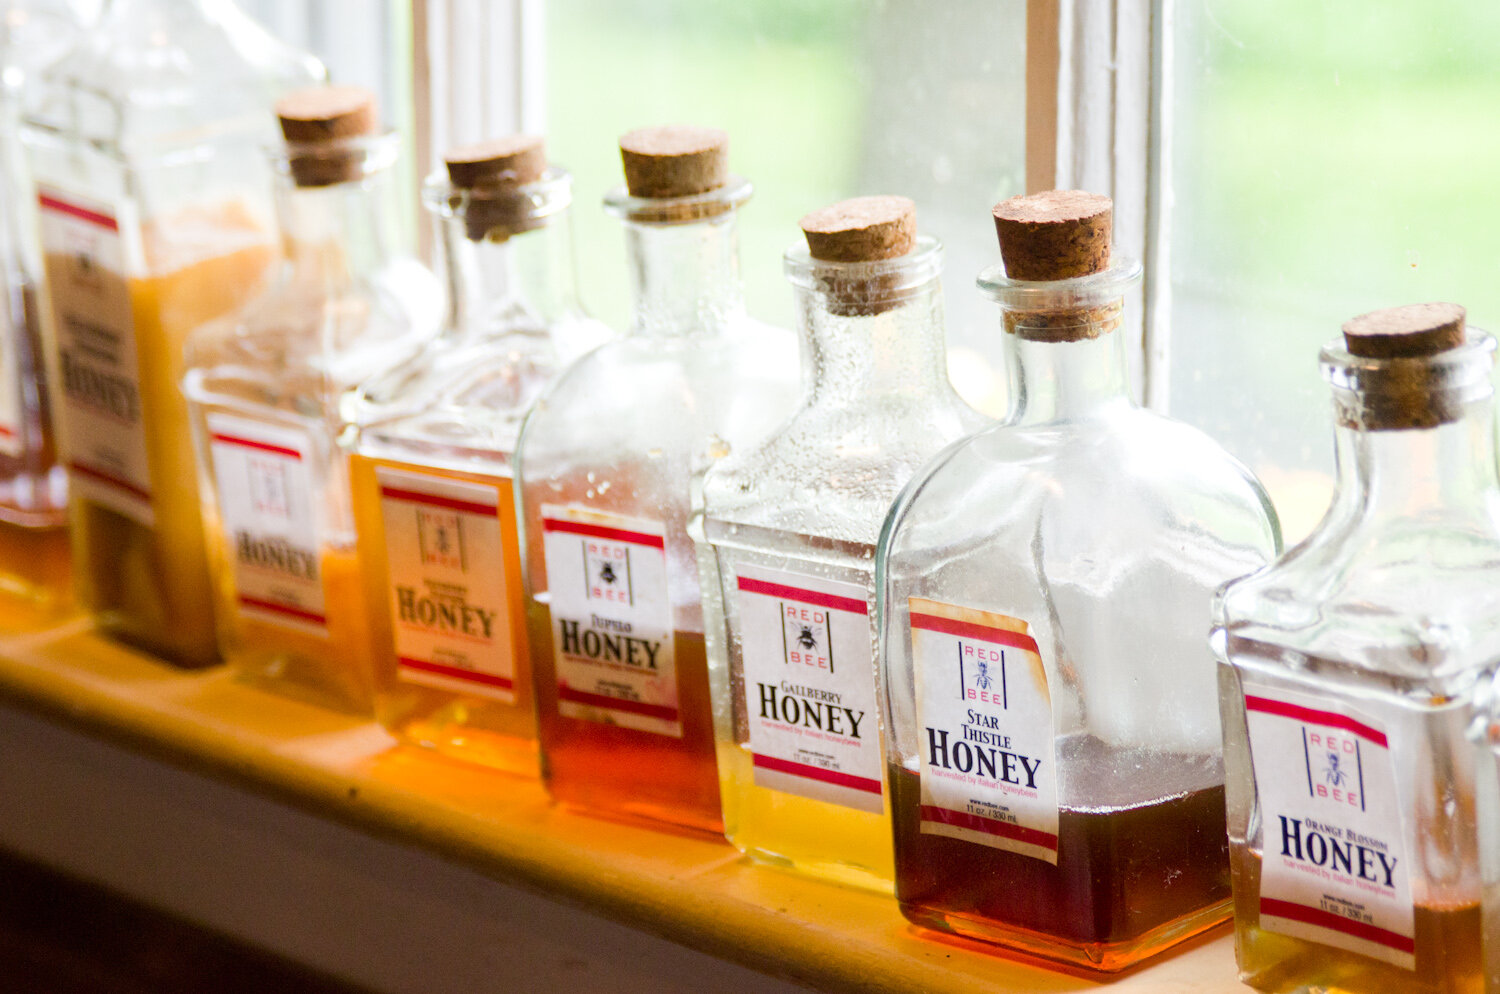 20140617-honey-bees-max-falkowitz-bottles.jpg